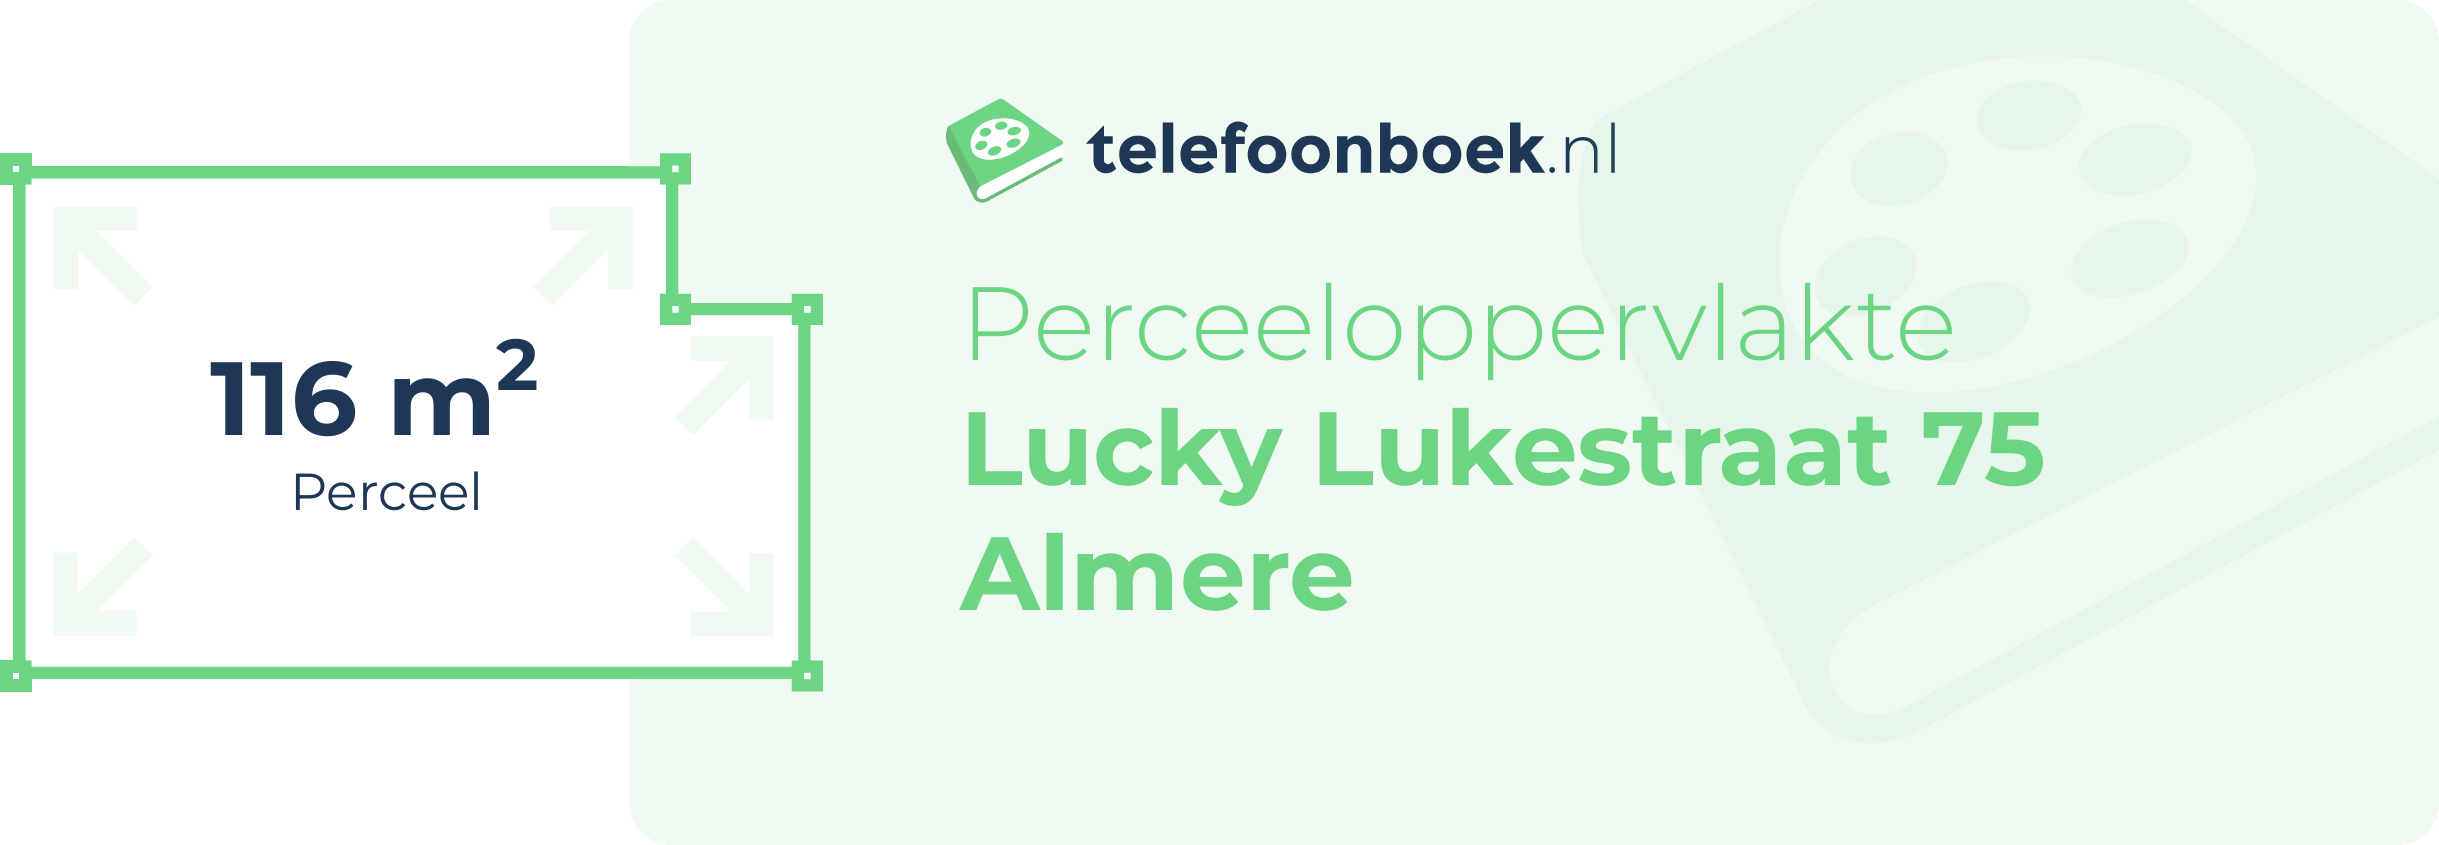 Perceeloppervlakte Lucky Lukestraat 75 Almere